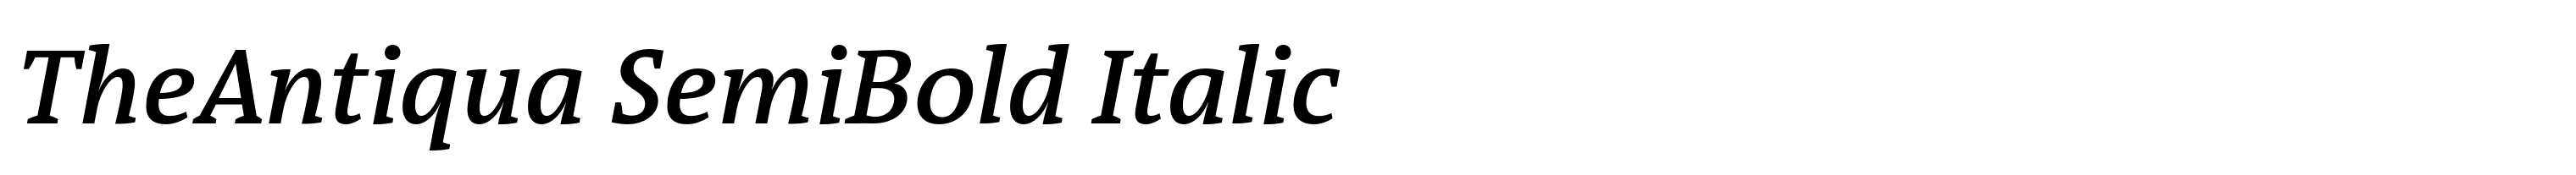 TheAntiqua SemiBold Italic